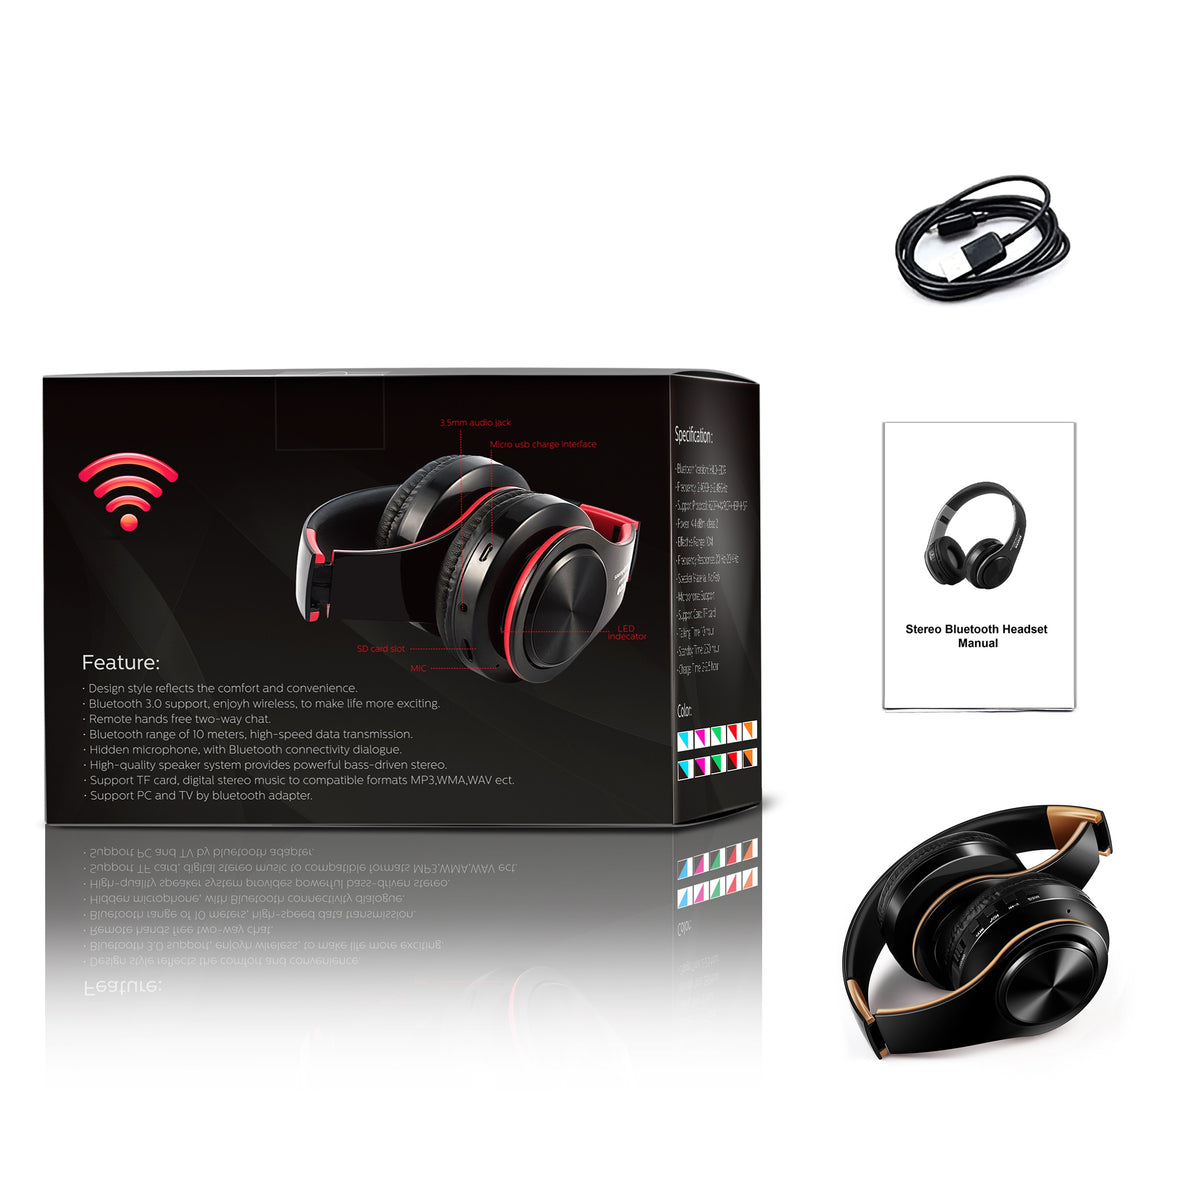 Compre Auriculares Inalámbricos Estéreo Wh700max S5000 Con Bluetooth Mp3  Play Fm Radio Oem Odm y Auriculares Estéreo Bluetooth de China por 6.4 USD